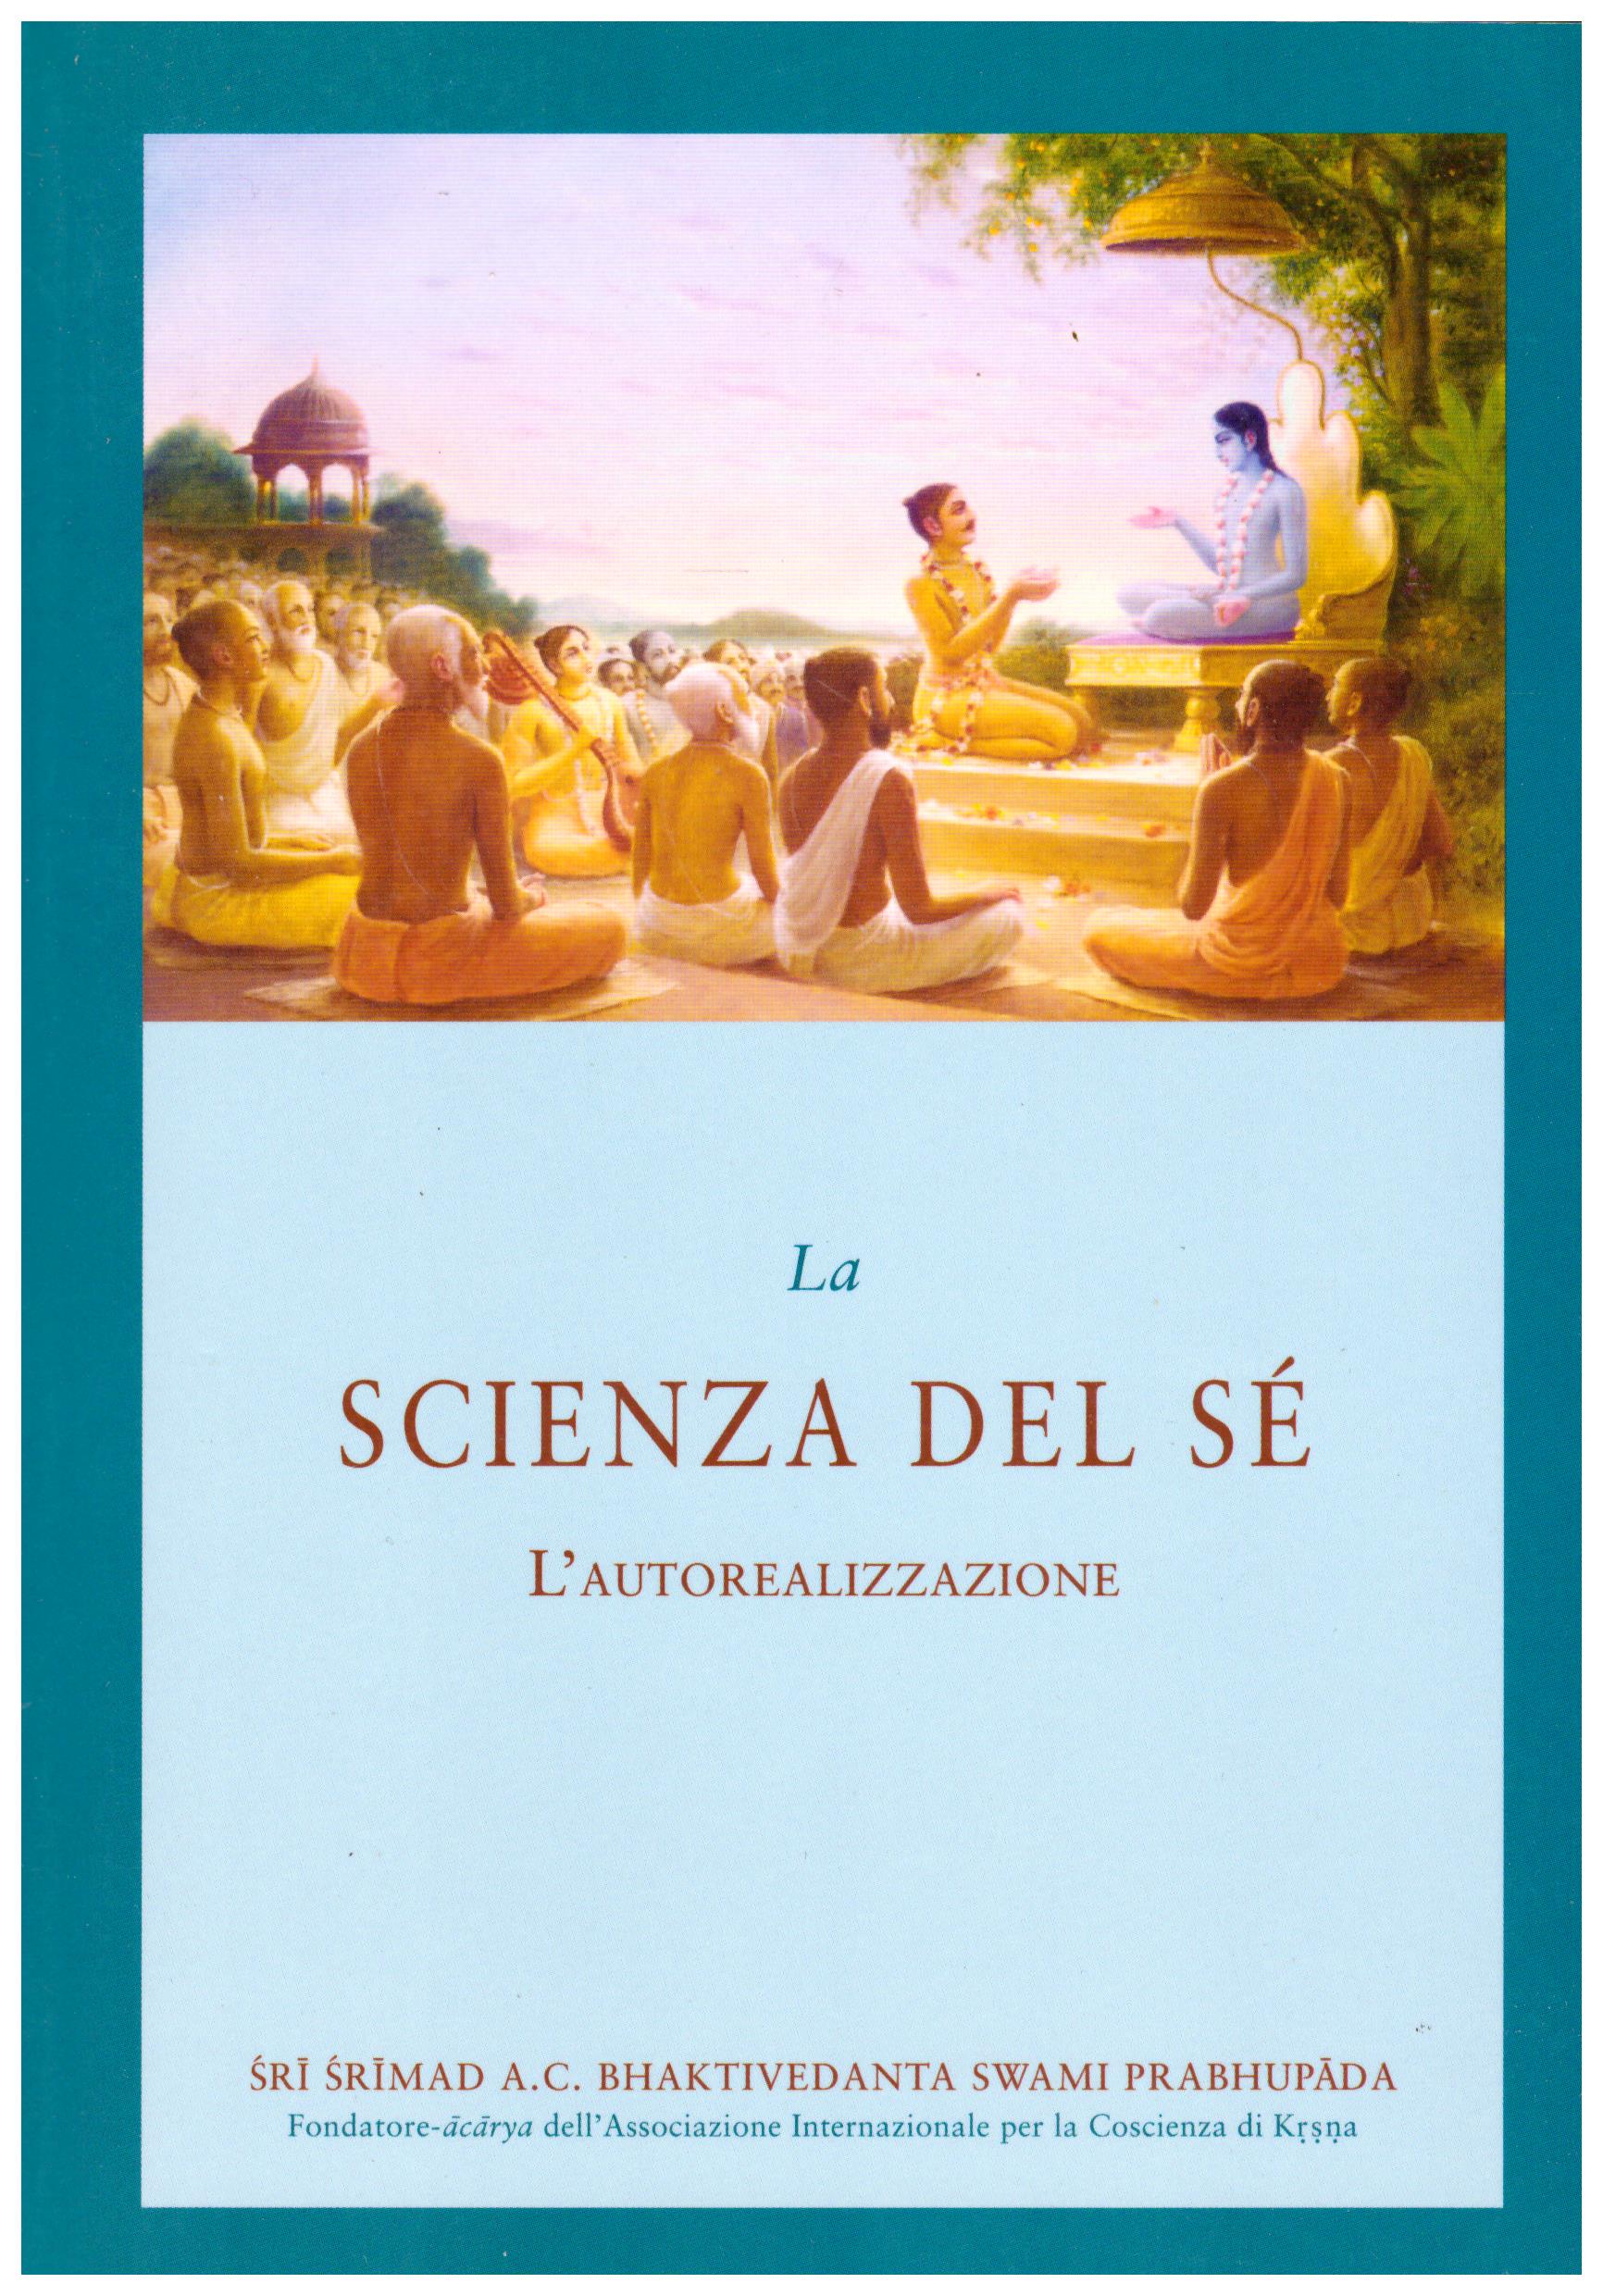 Titolo: La scienza del sè, l'autorealizzazione Autore: AA.VV. Editore: The bhaktivedanta book trust 2013